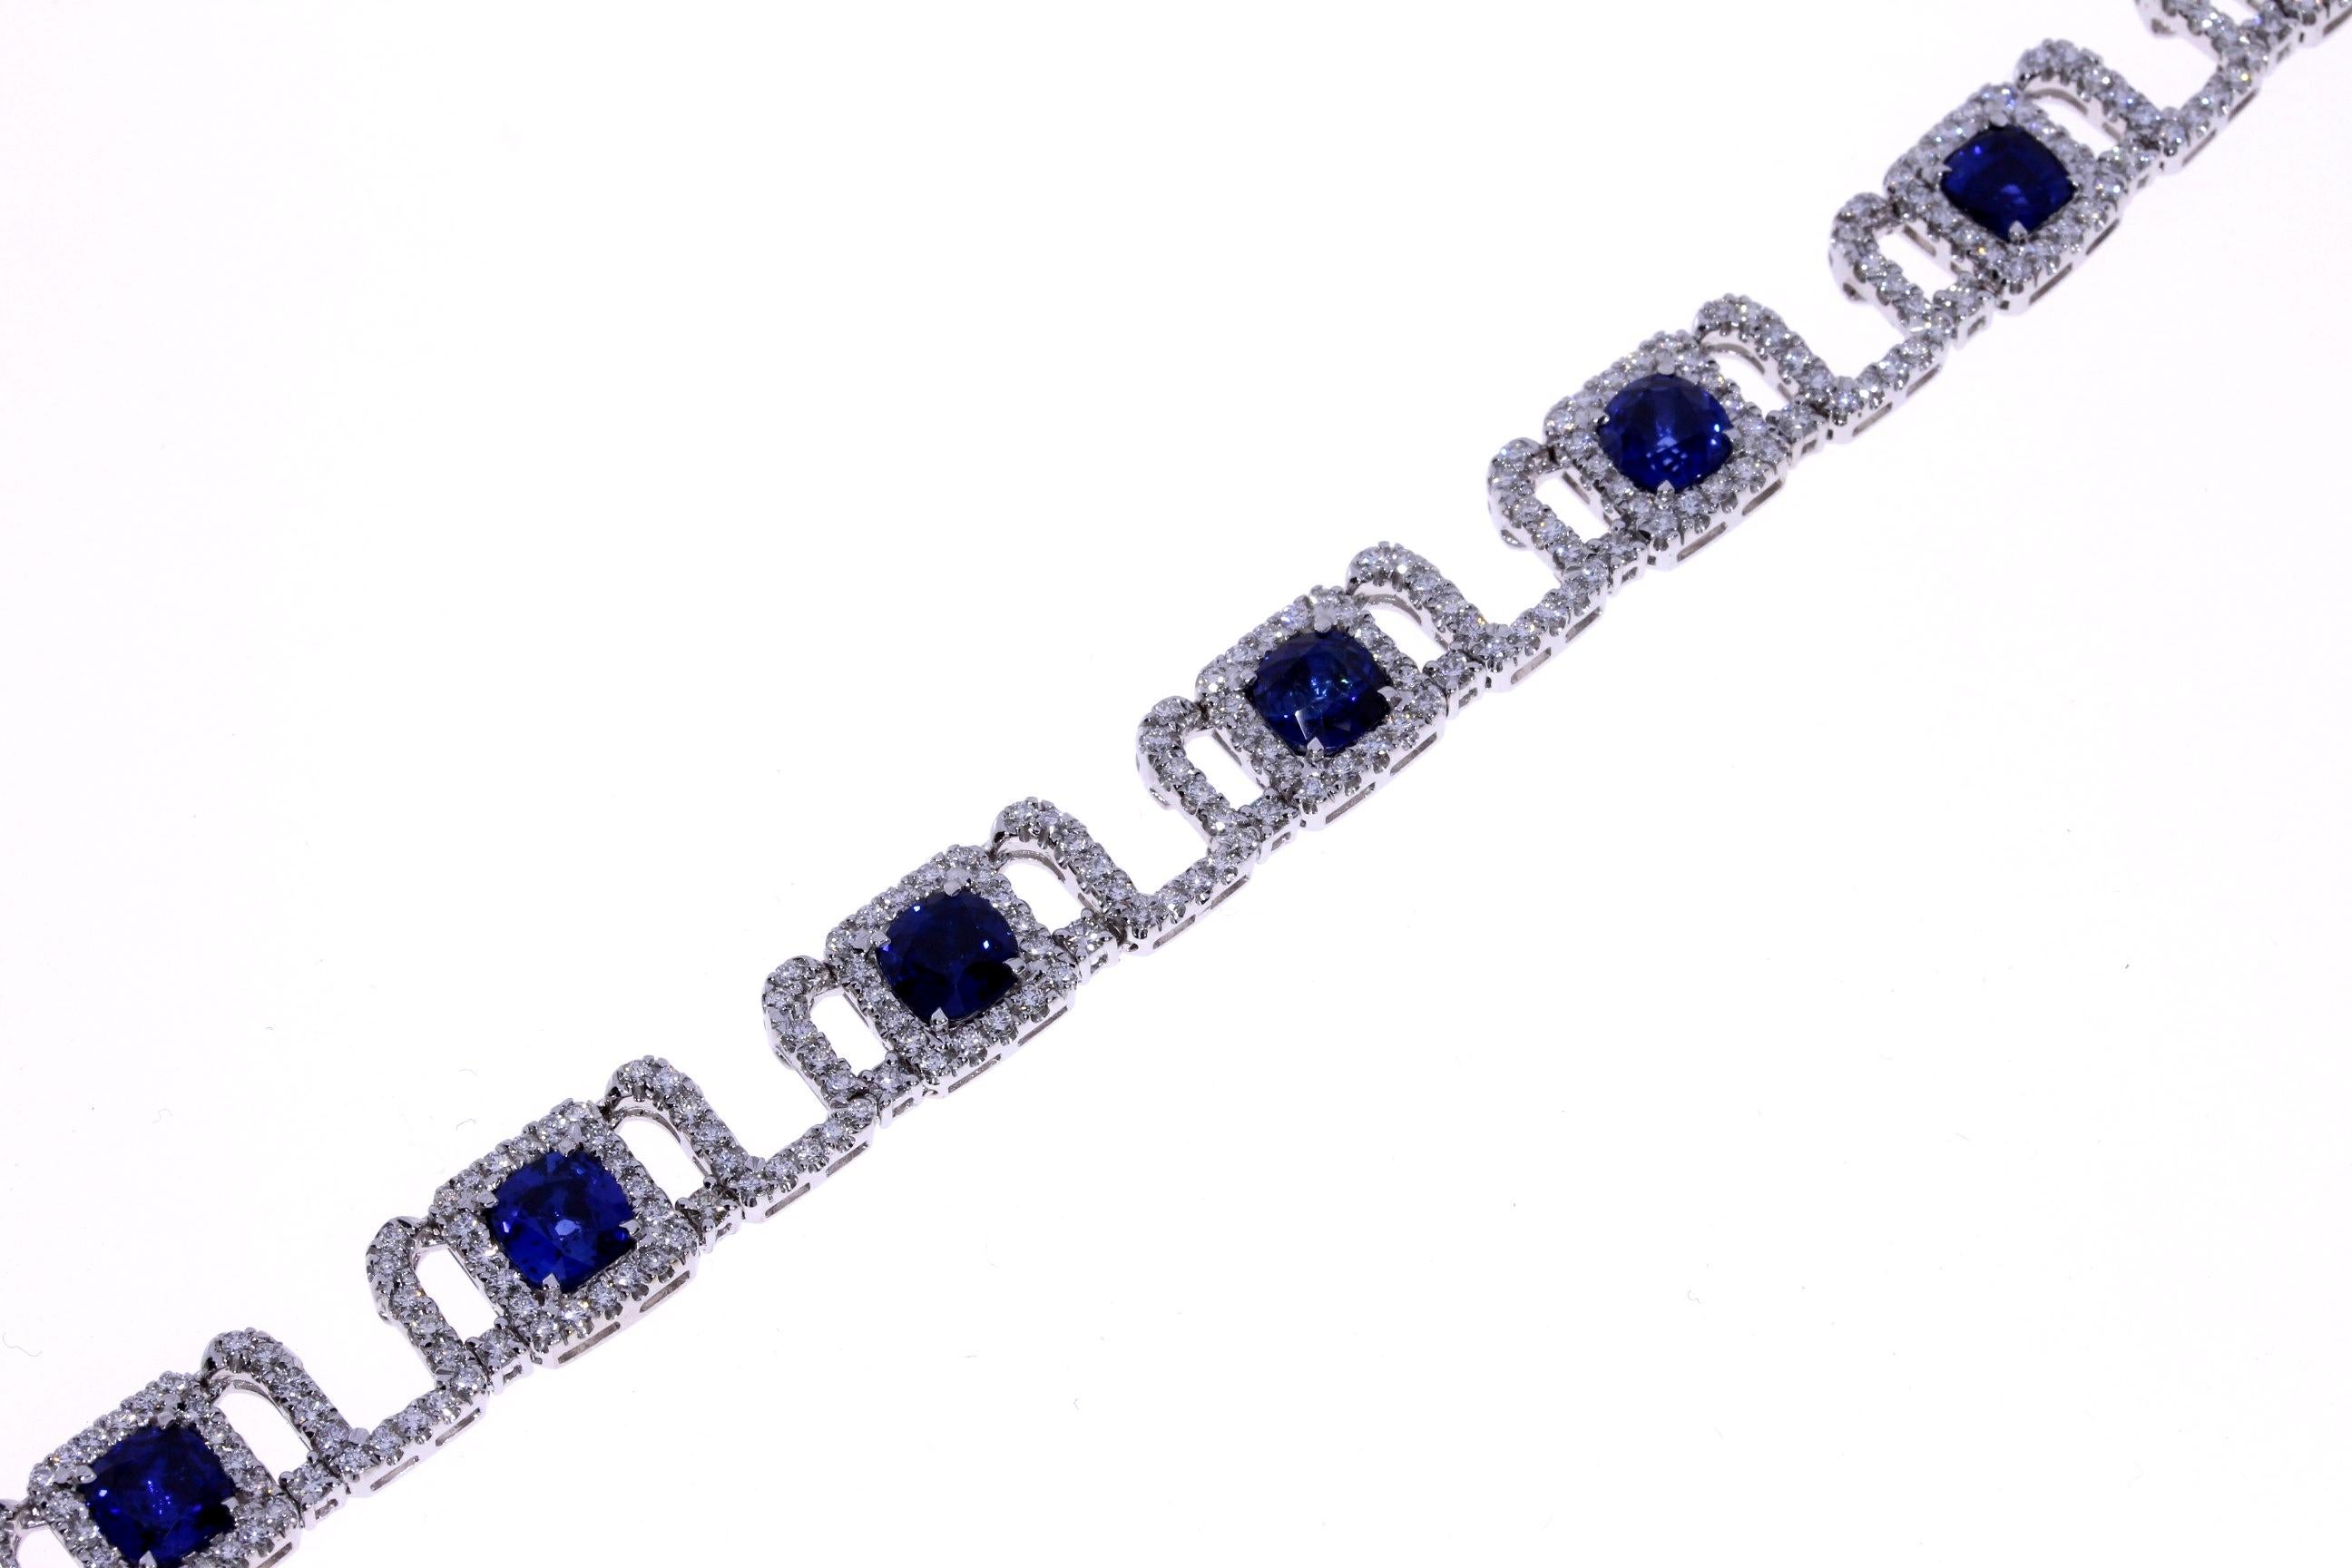 Fait à la main
Or blanc 18K
7,94ct de diamants au total
19.67ct Total Saphir
Les diamants sont de couleur F-G, VS2-SI1.
Les saphirs sont de couleur bleu royal Ceylan chauffé.
Collection d'onces Signature Design 

Conçu, trié sur le volet et fabriqué